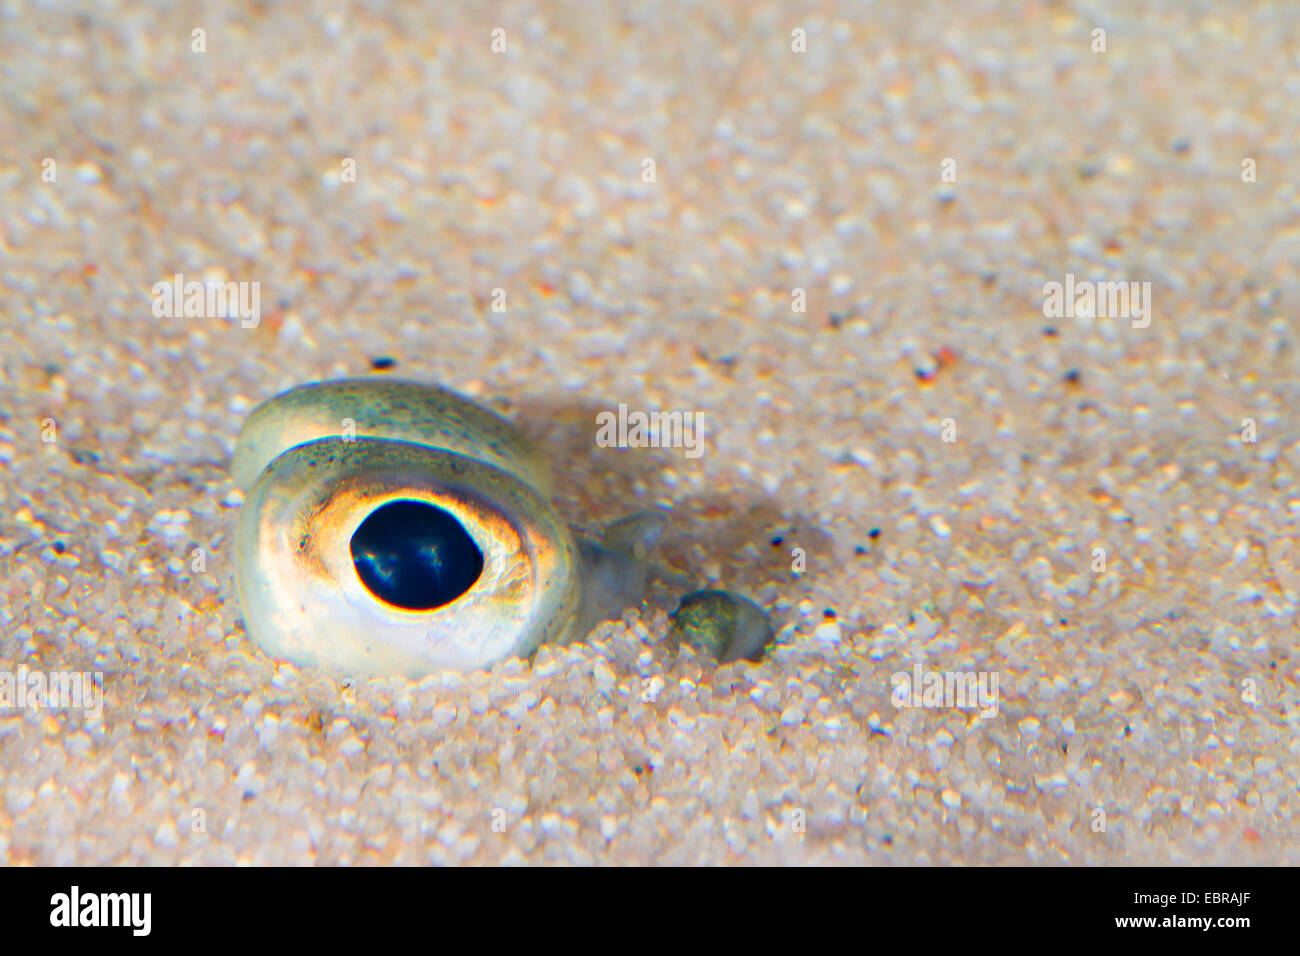 Scholle, Scholle (Pleuronectes Platessa), grub in den Sand, die, den nur die Augen gesehen werden kann Stockfoto